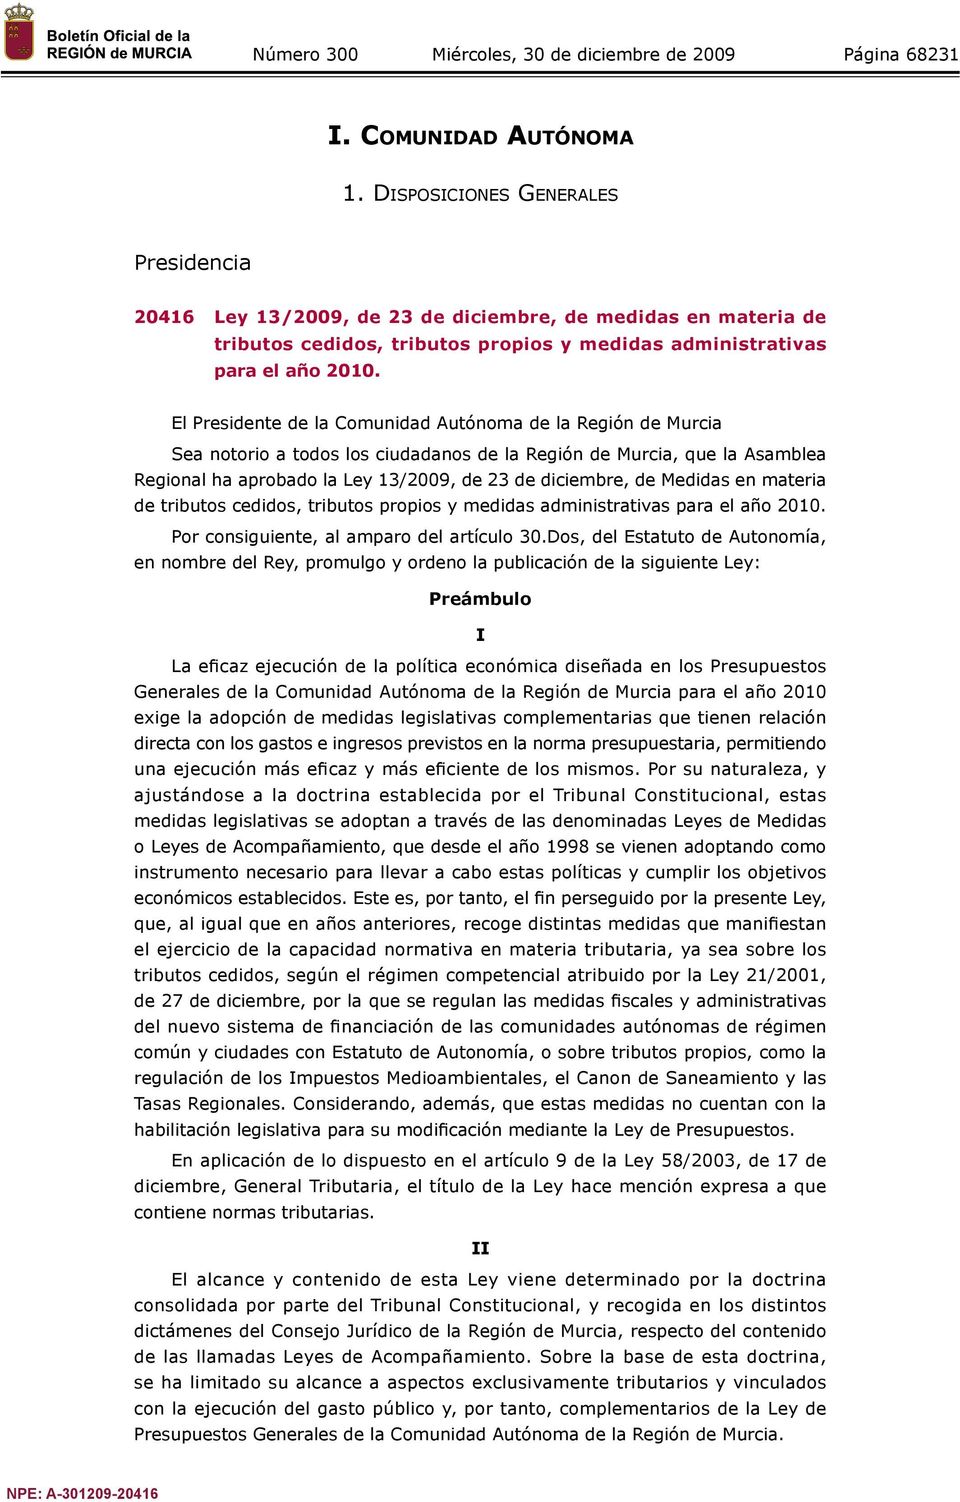 El Presidente de la Comunidad Autónoma de la Región de Murcia Sea notorio a todos los ciudadanos de la Región de Murcia, que la Asamblea Regional ha aprobado la Ley 13/2009, de 23 de diciembre, de